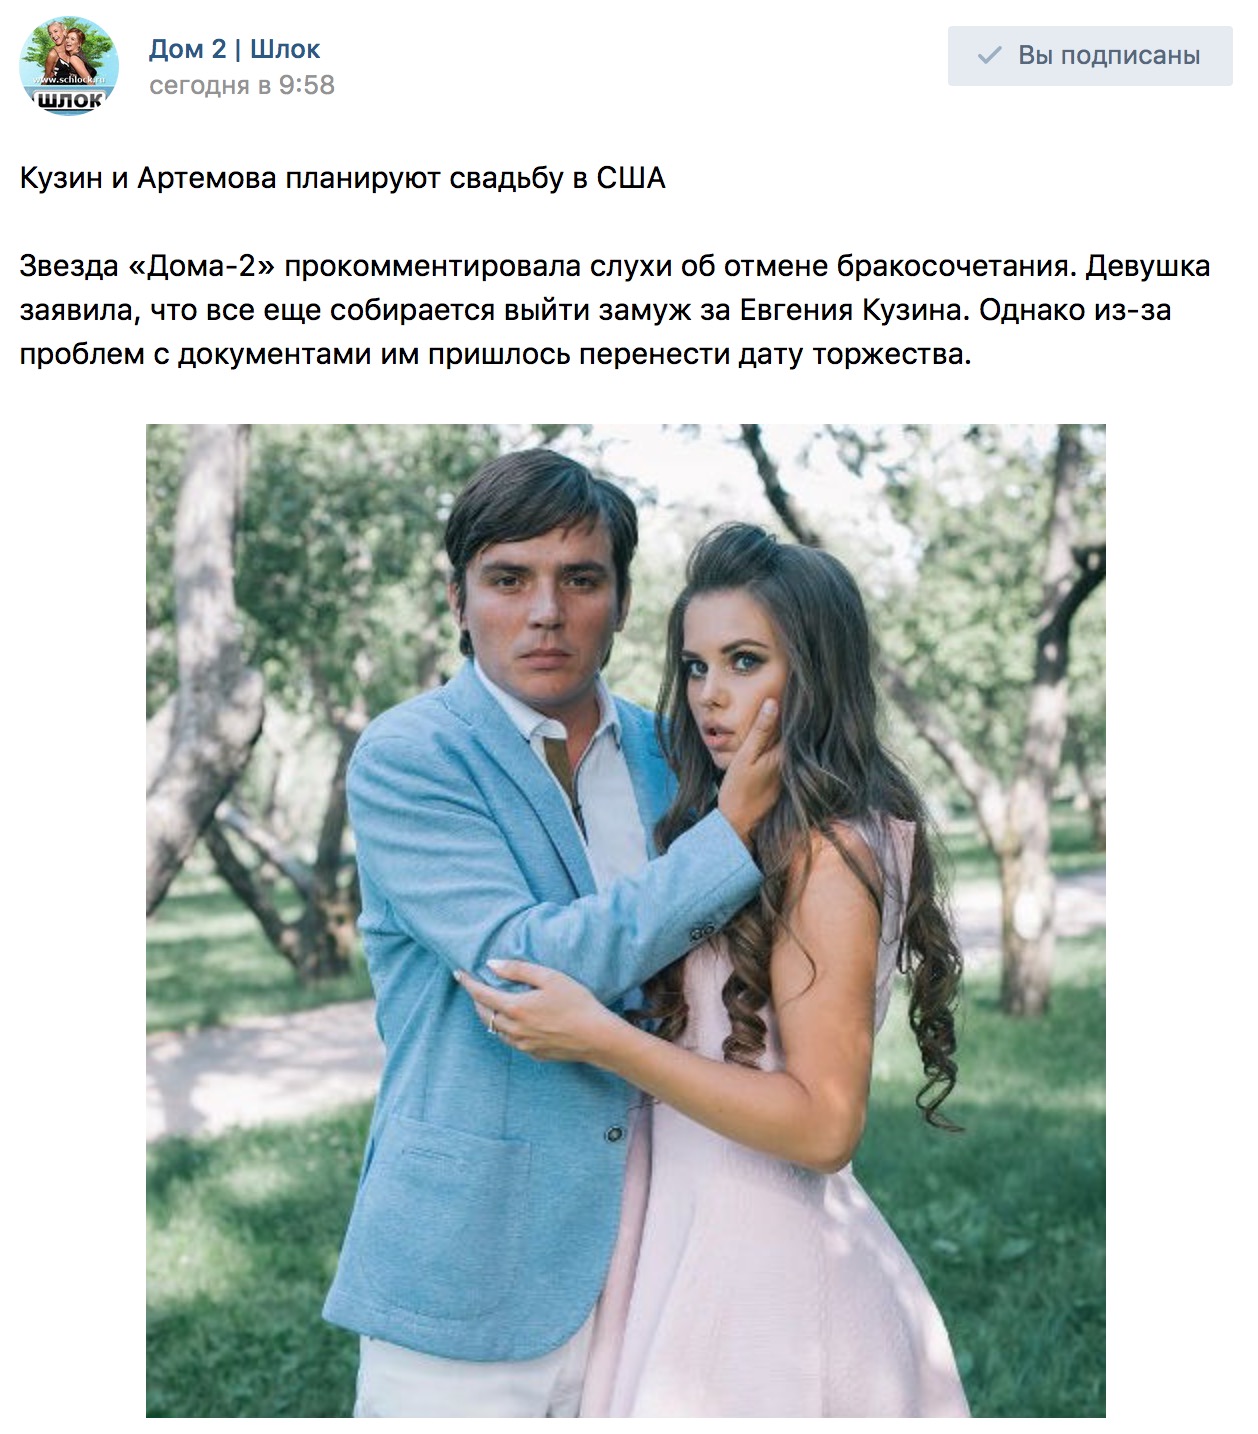 Кузин и Артемова планируют свадьбу в США Часть 2